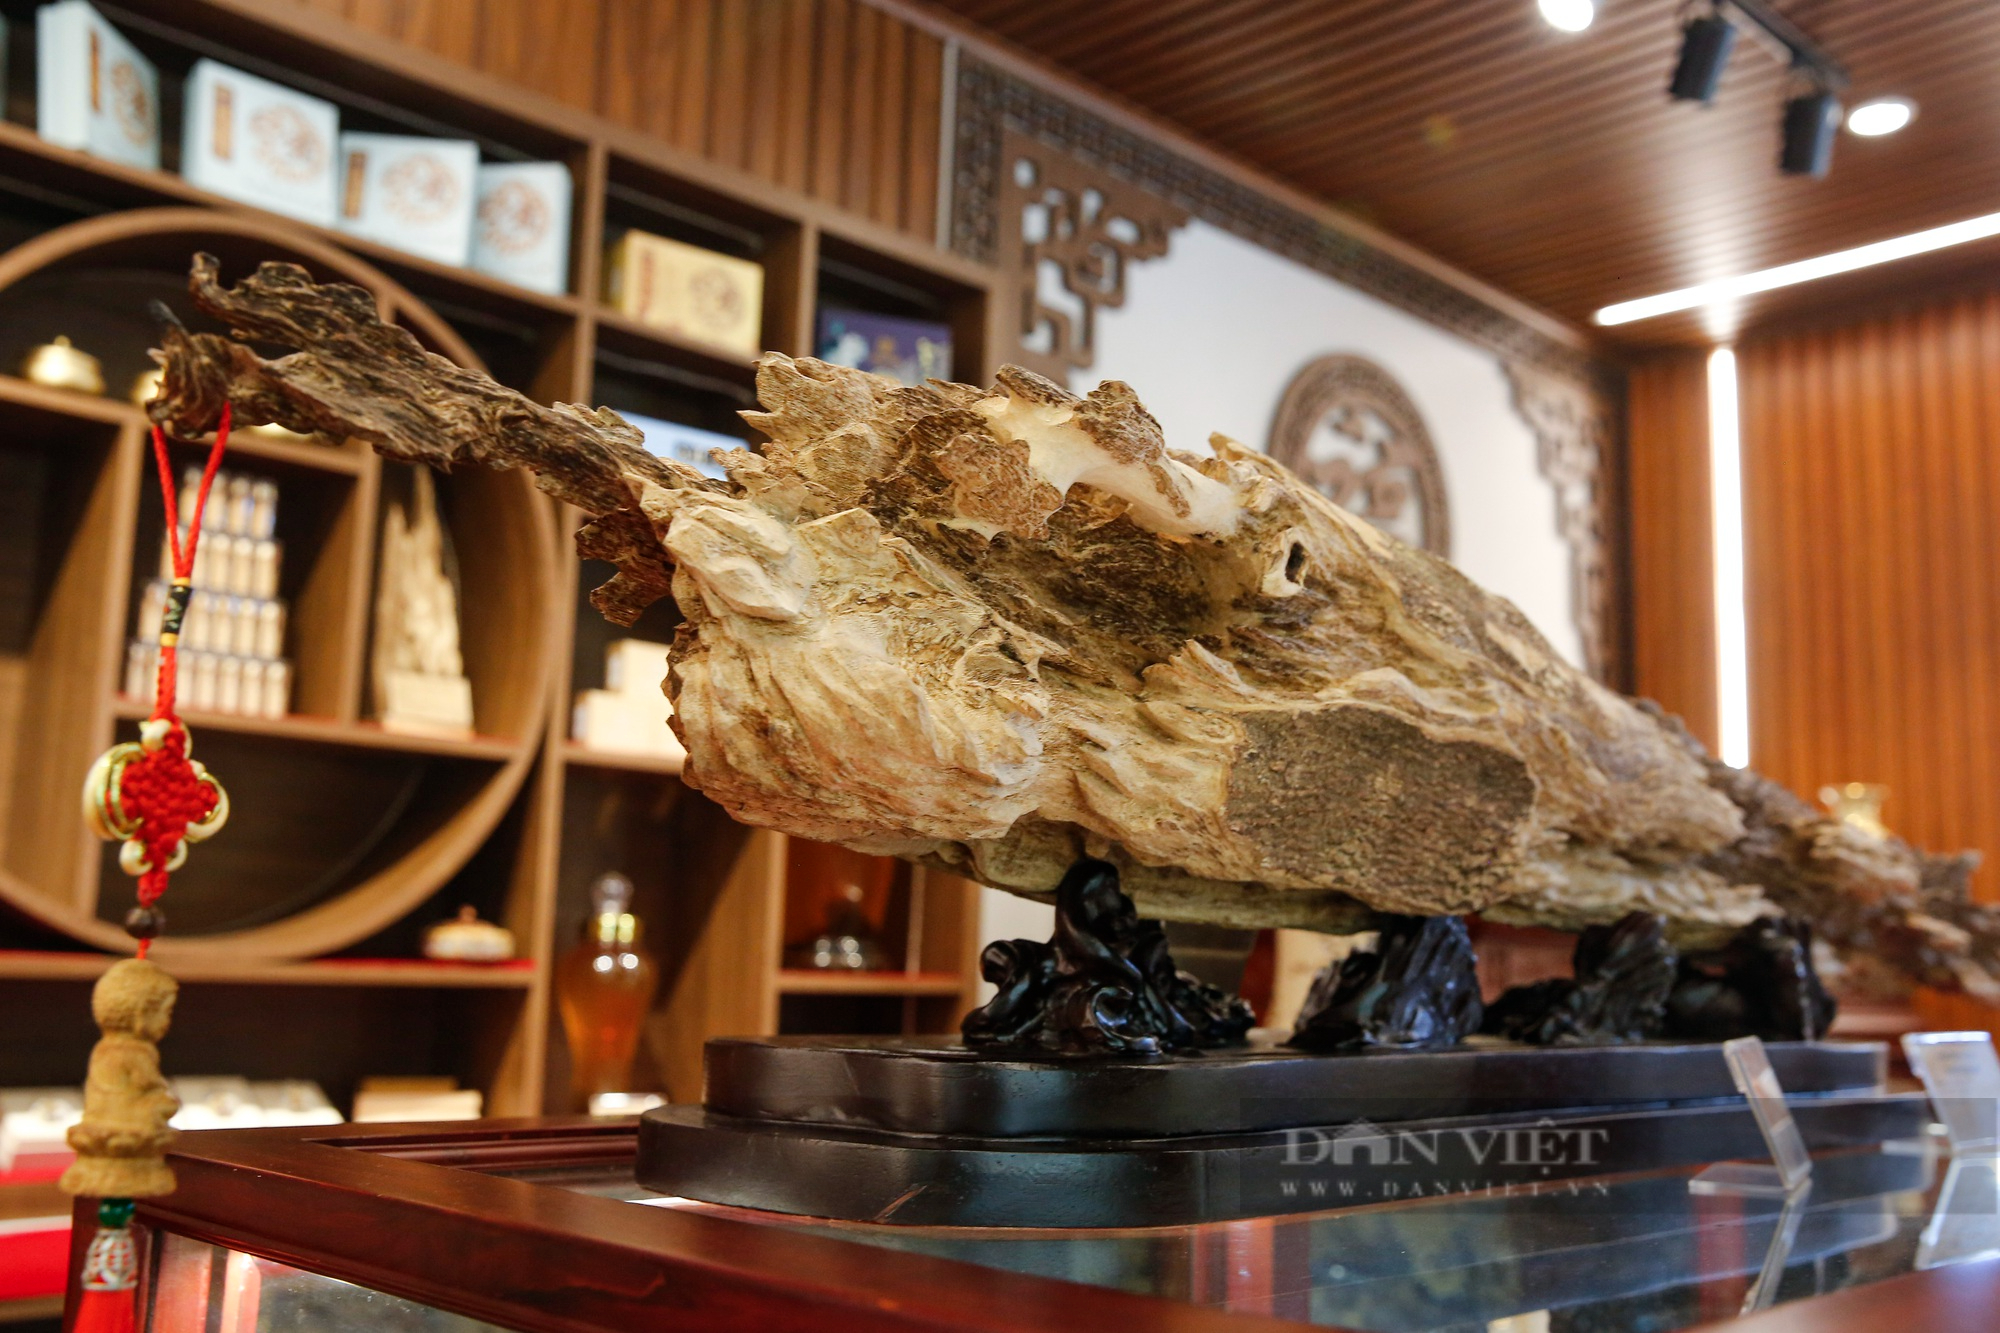 Khối gỗ trầm hương hiếm có nhìn giống "thanh bảo kiếm" được chào bán với giá 1 tỷ đồng